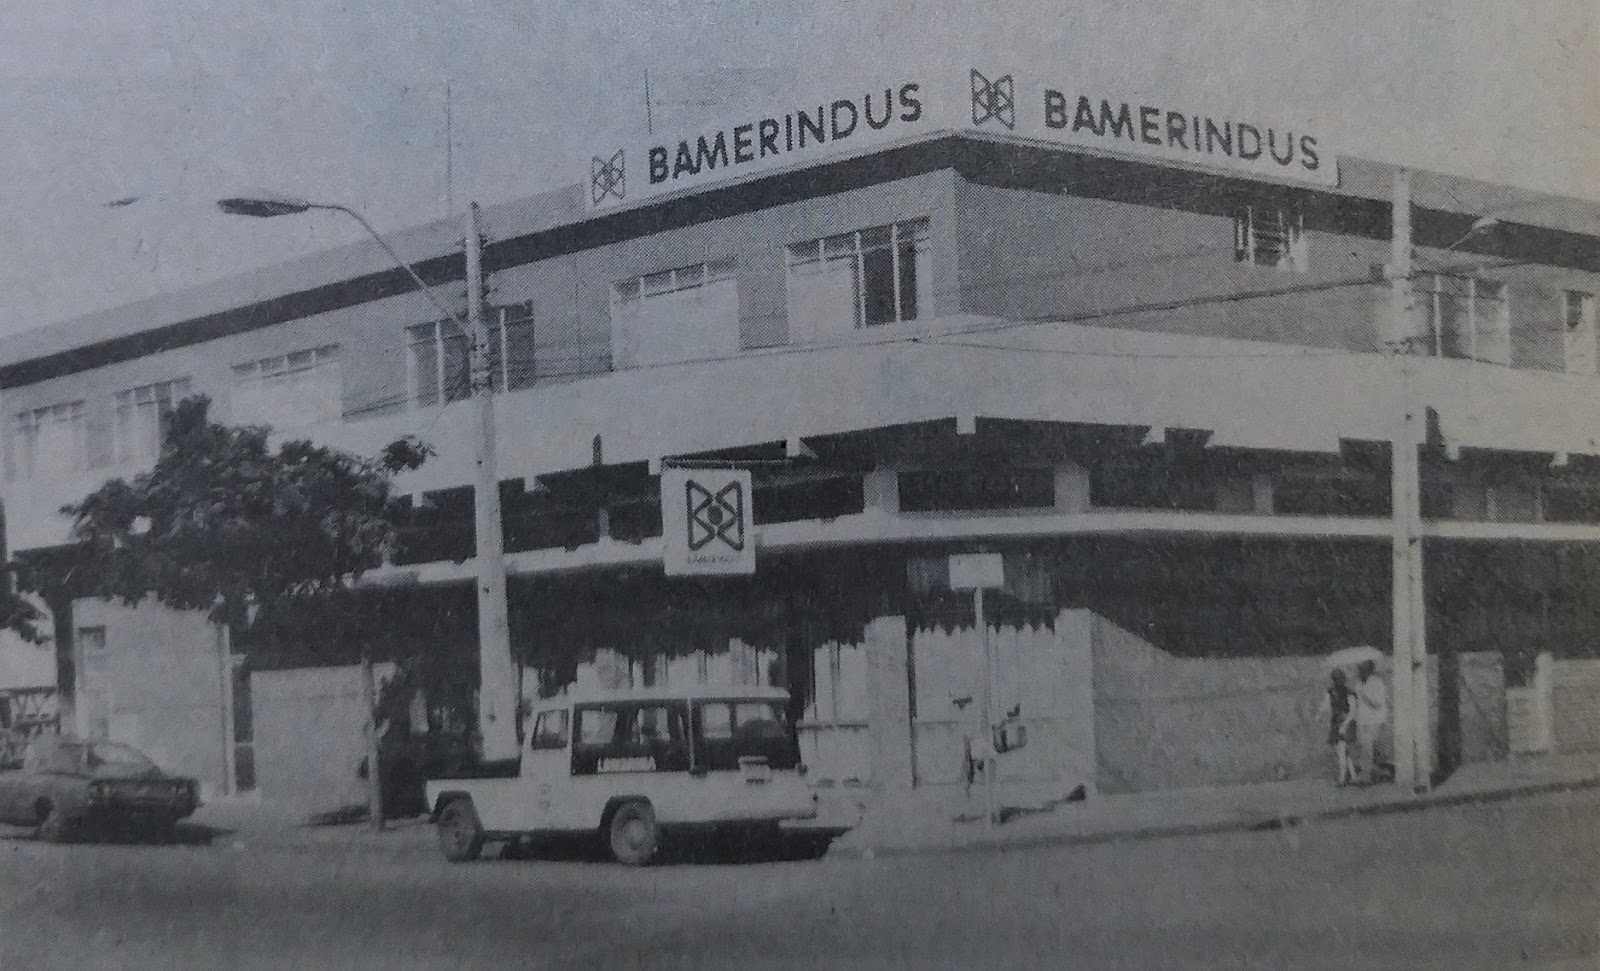 Assalto ao Bamaerindus - 1975